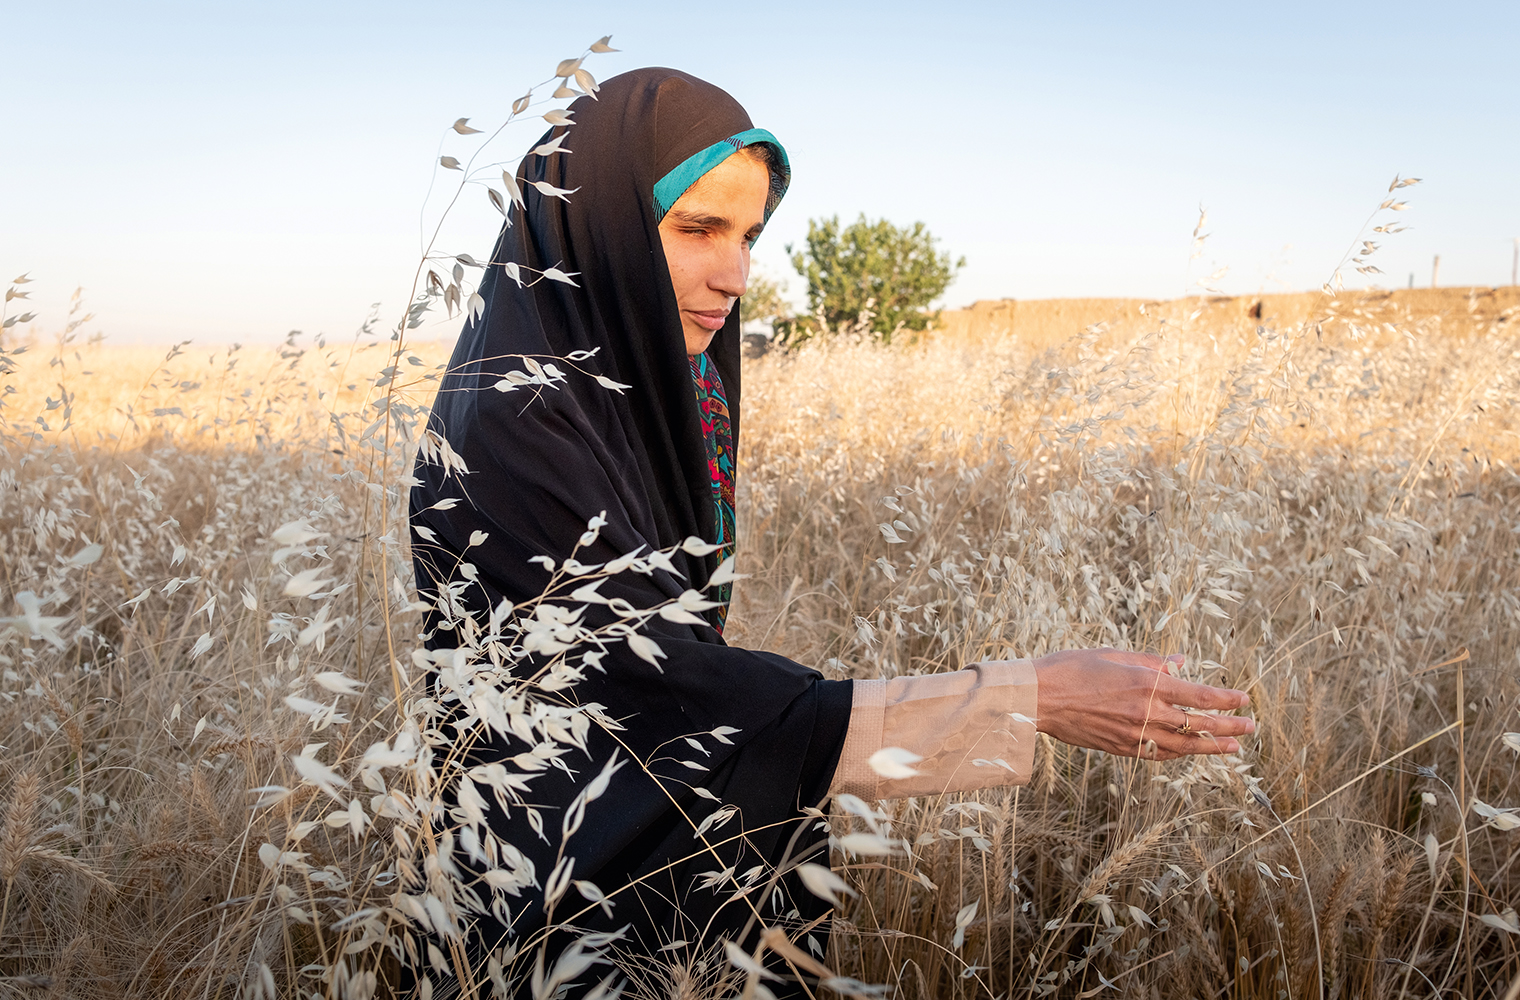 Blinde, iranische Frau in Hijab geht durch ein hohes Haferfeld und streckt die rechte Hand prüfend aus.